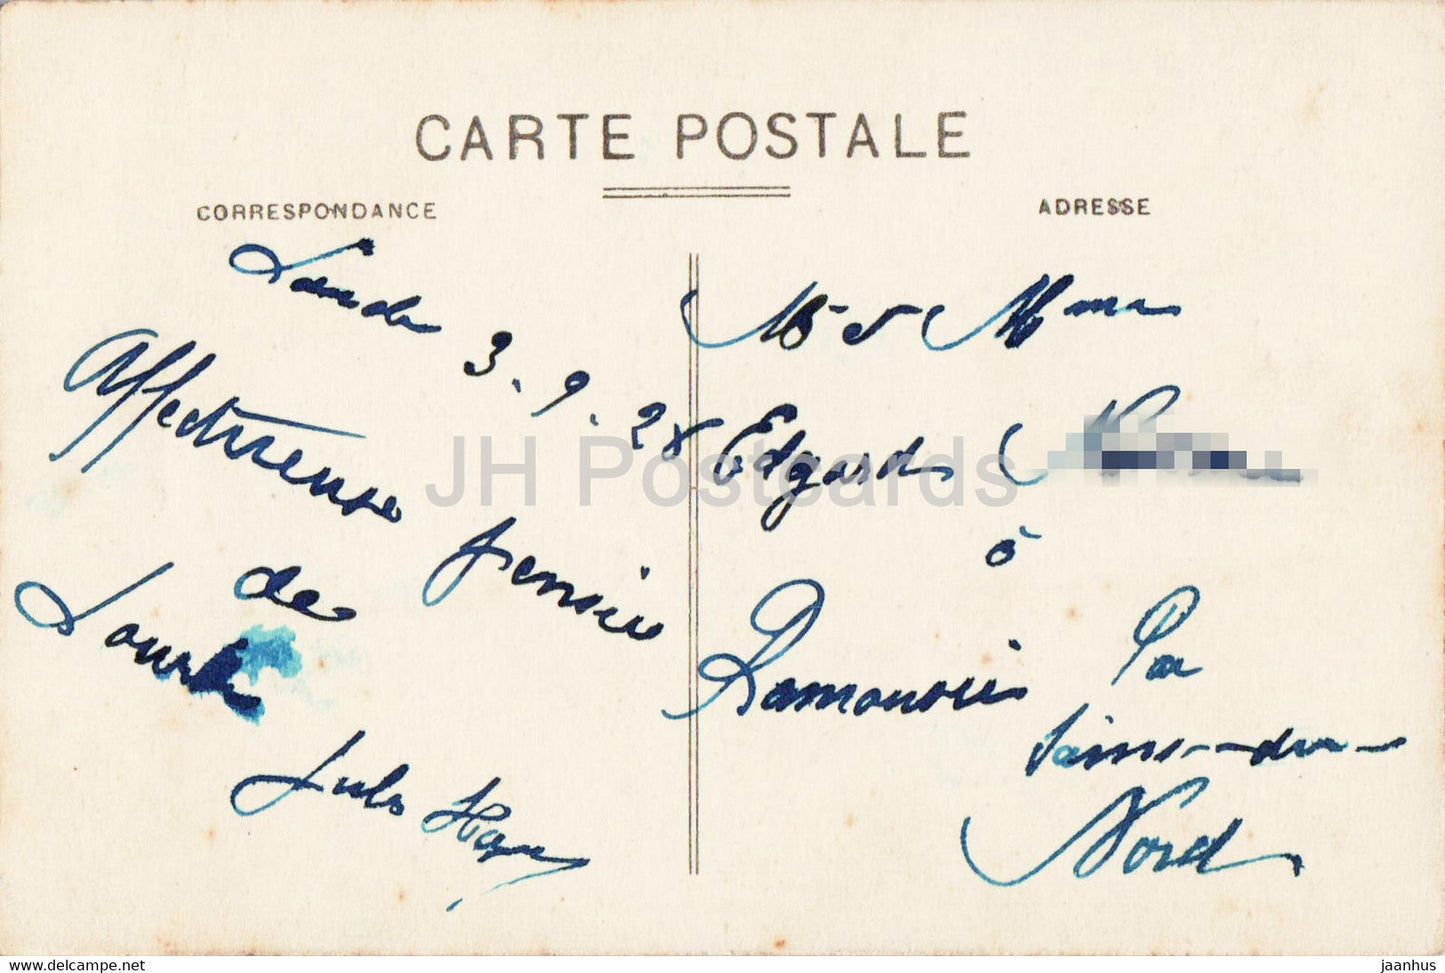 De Lourdes portez lui - old postcard - 1928 - France - used